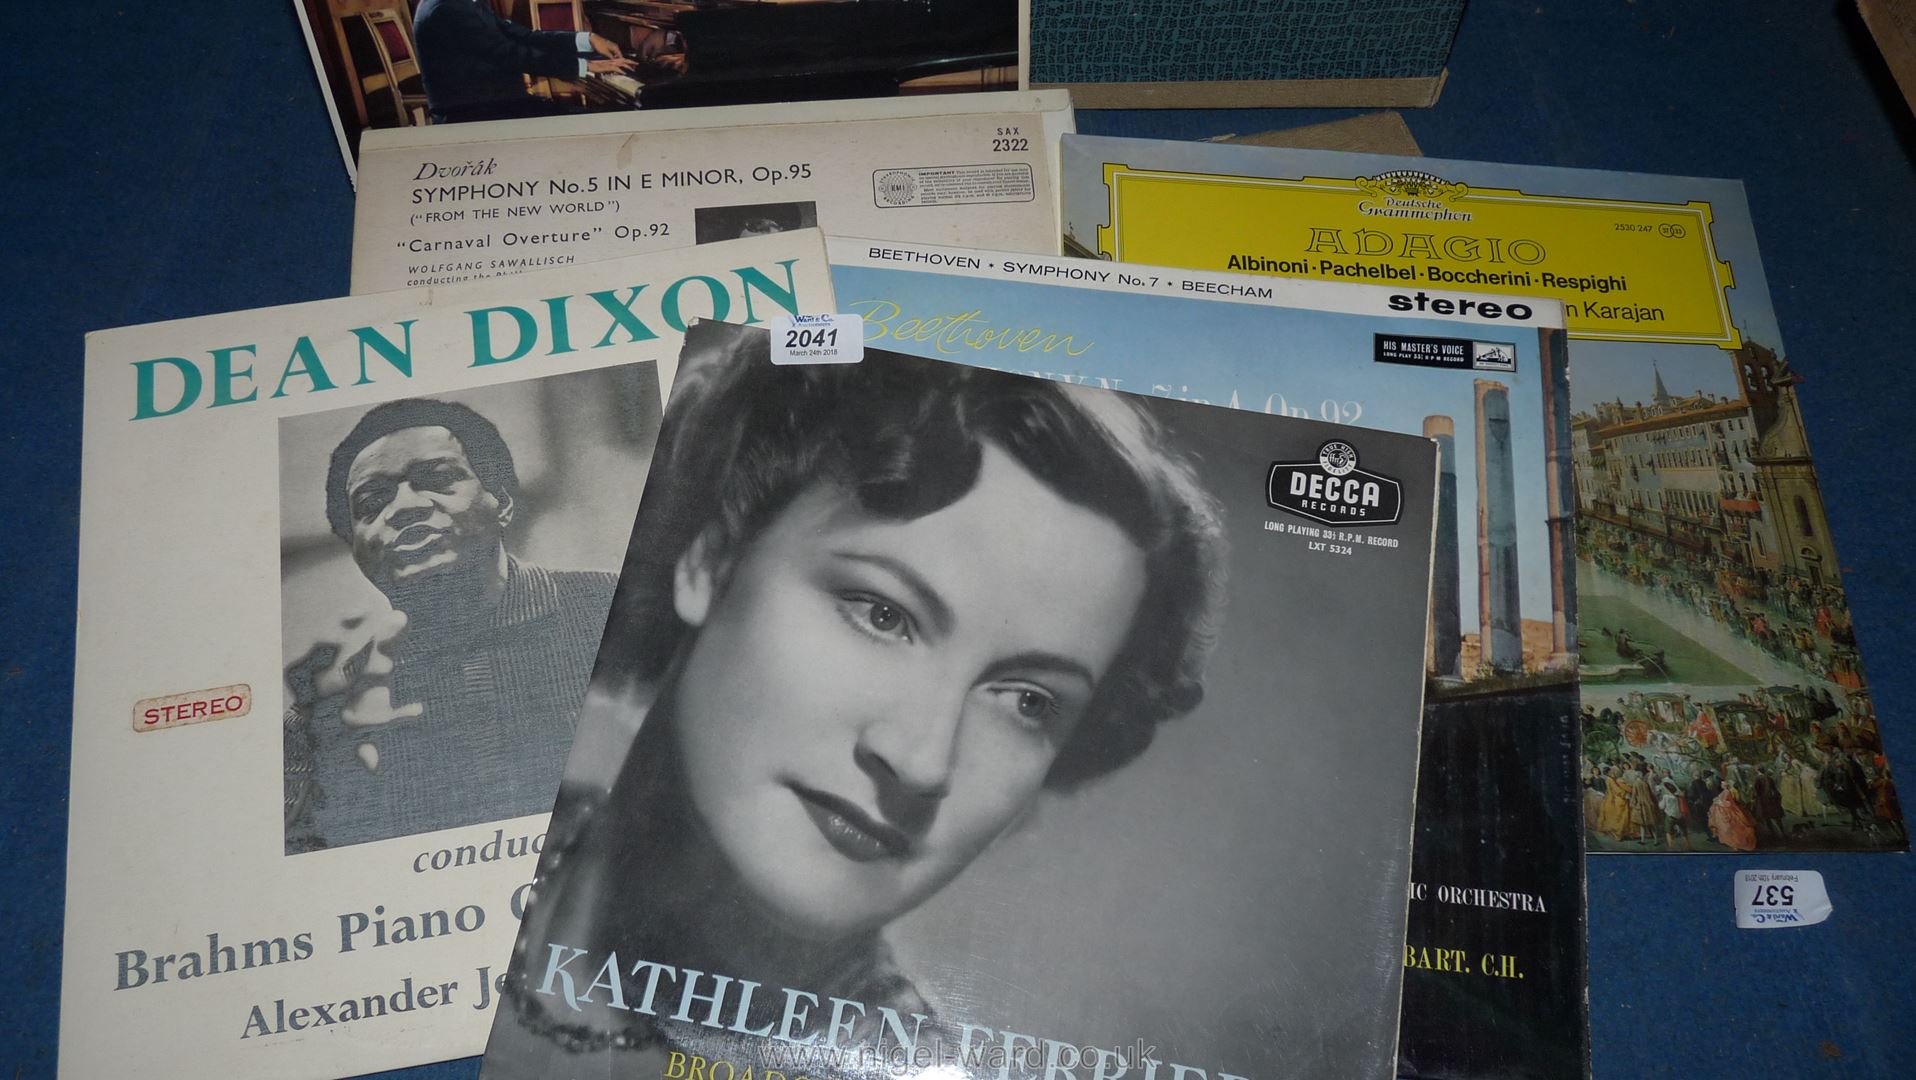 A record case of classical LP's, Dean Dixon,